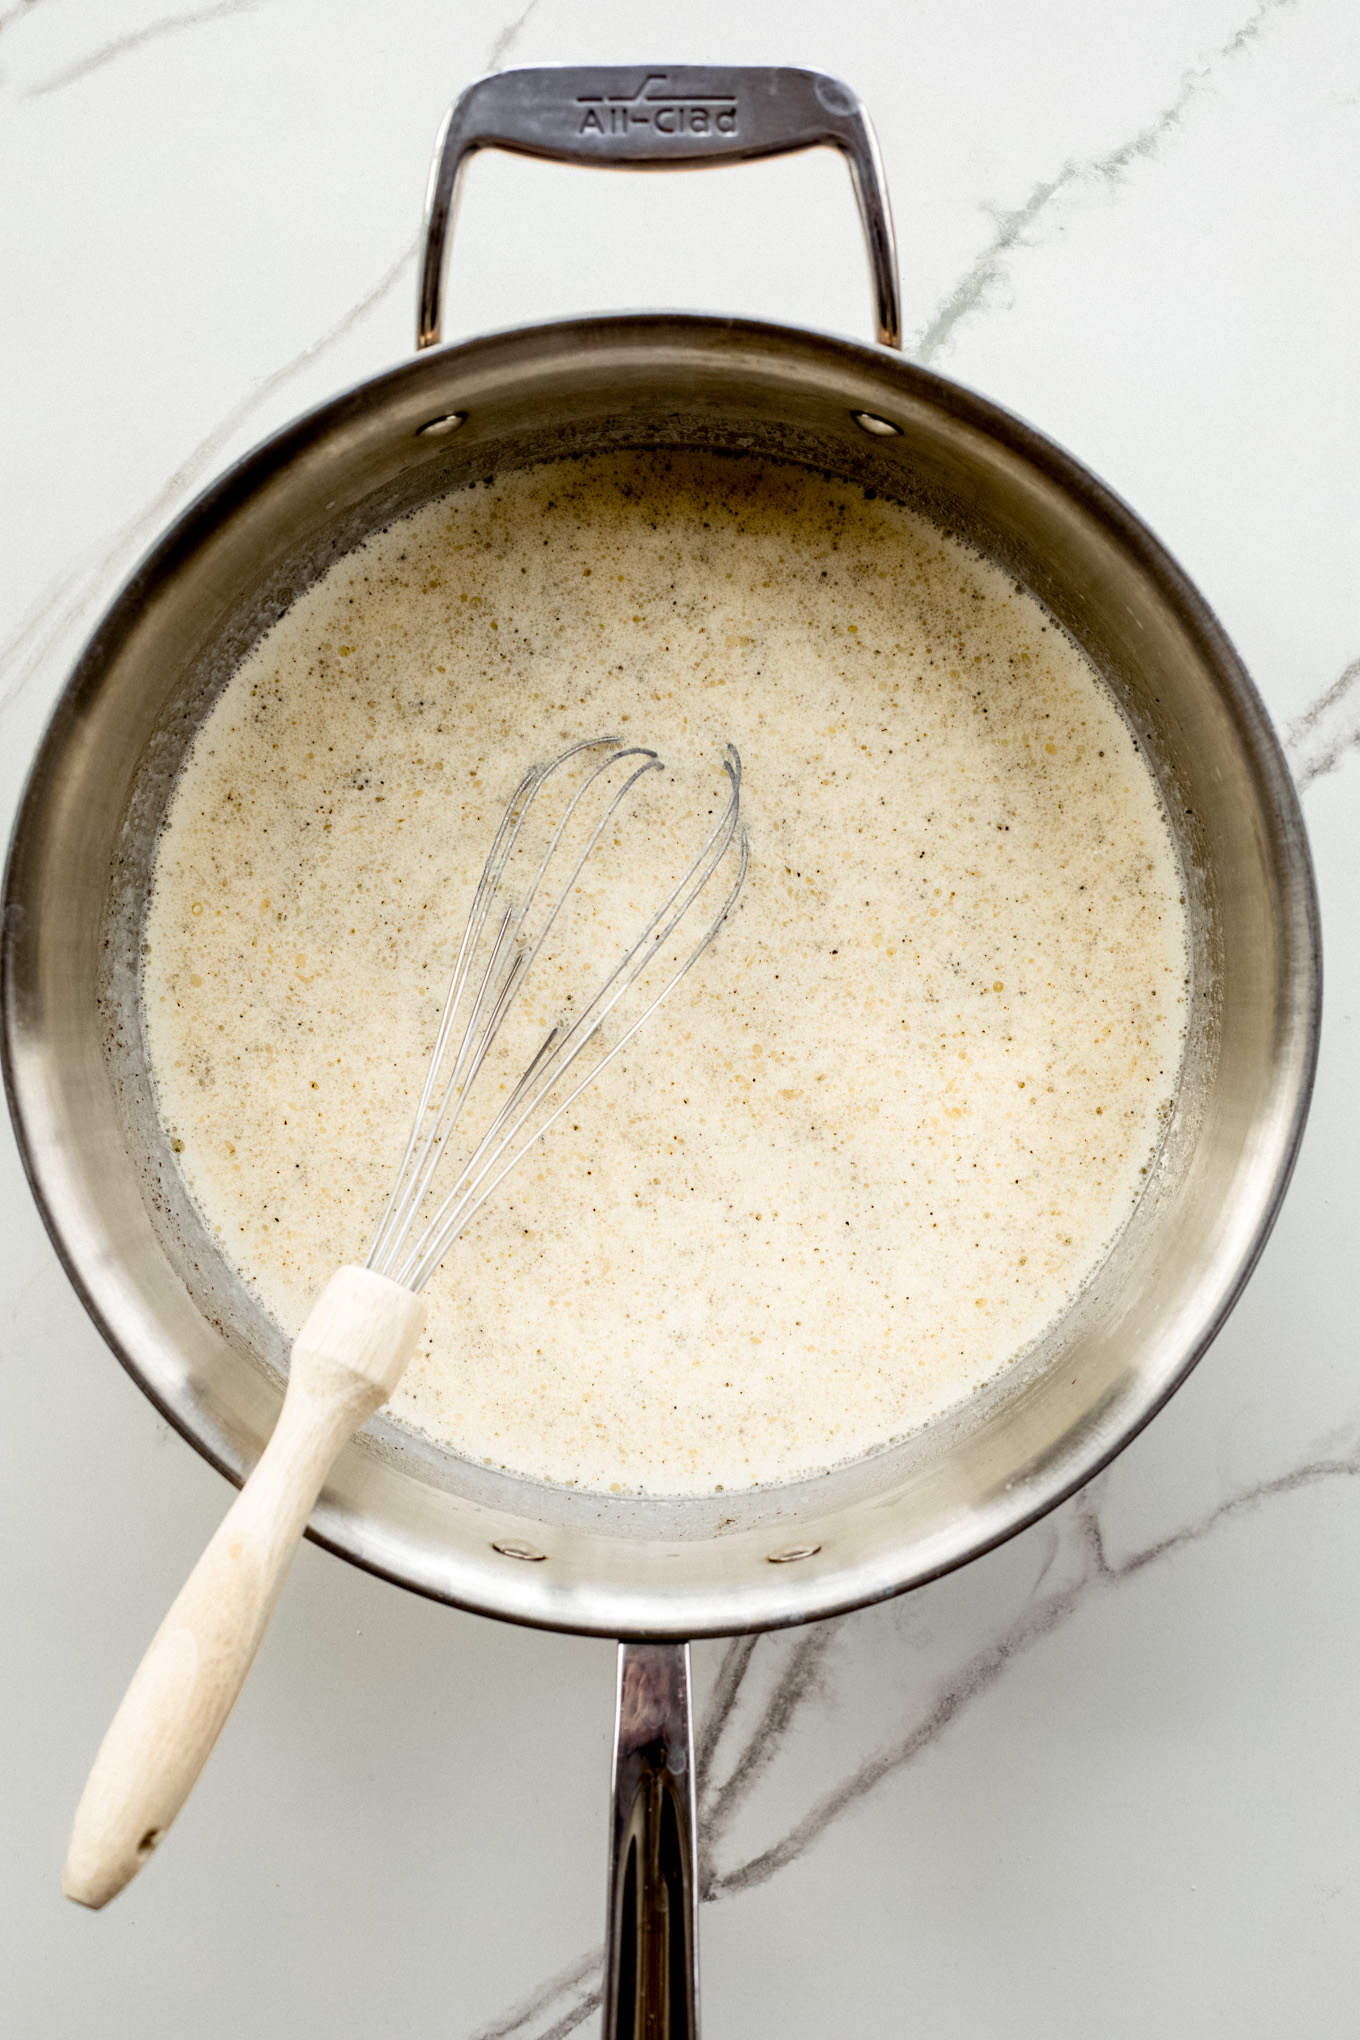 milk mixture in a pan.